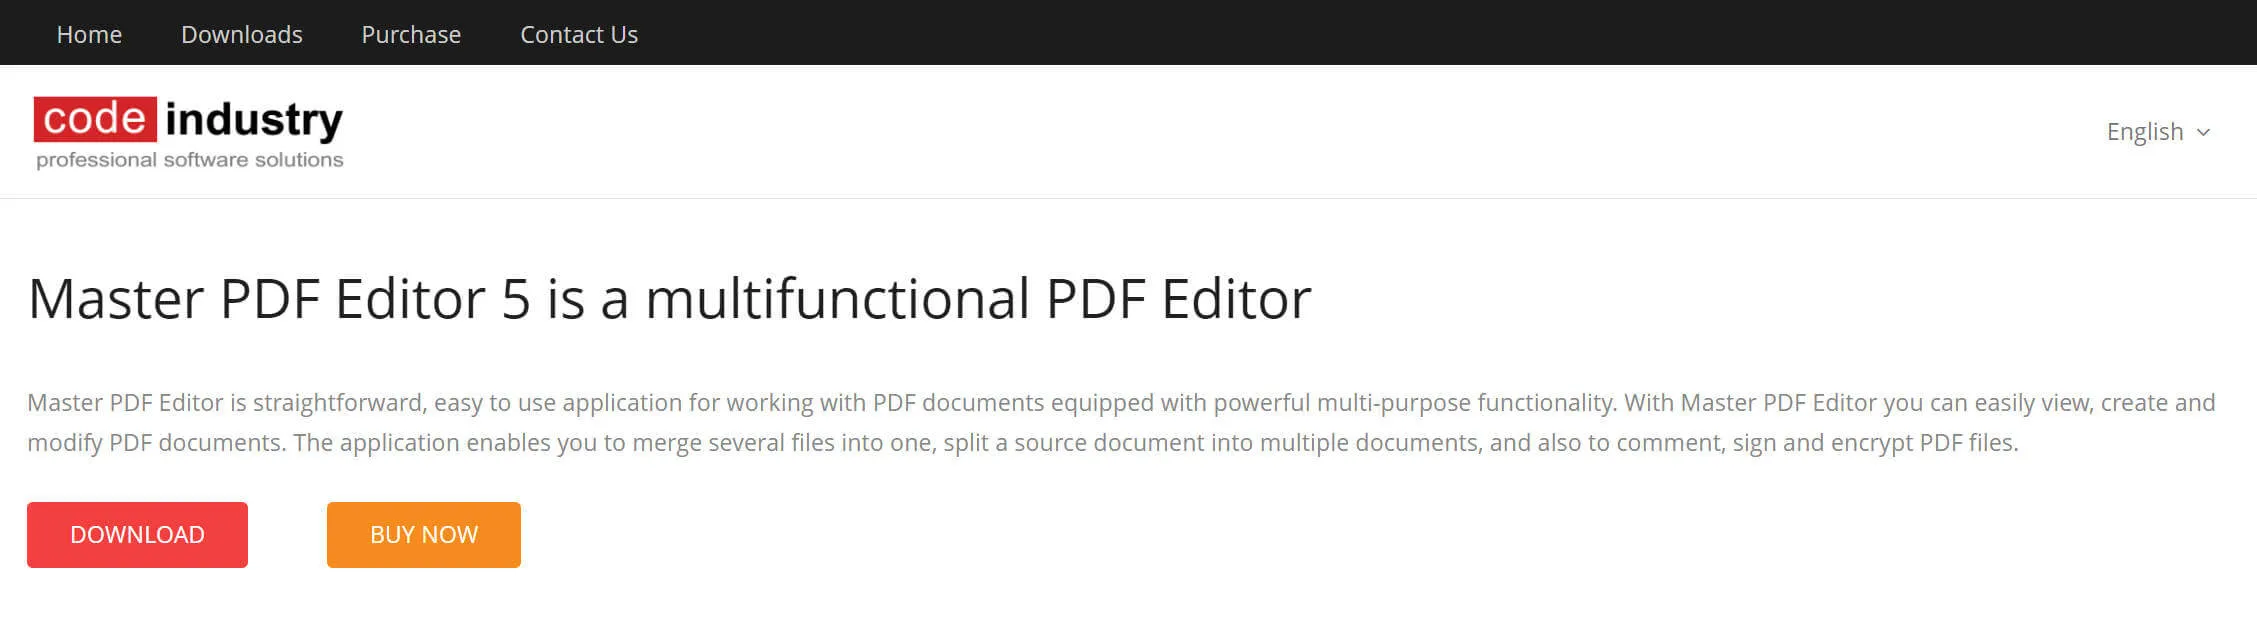 Download Master PDF Editor